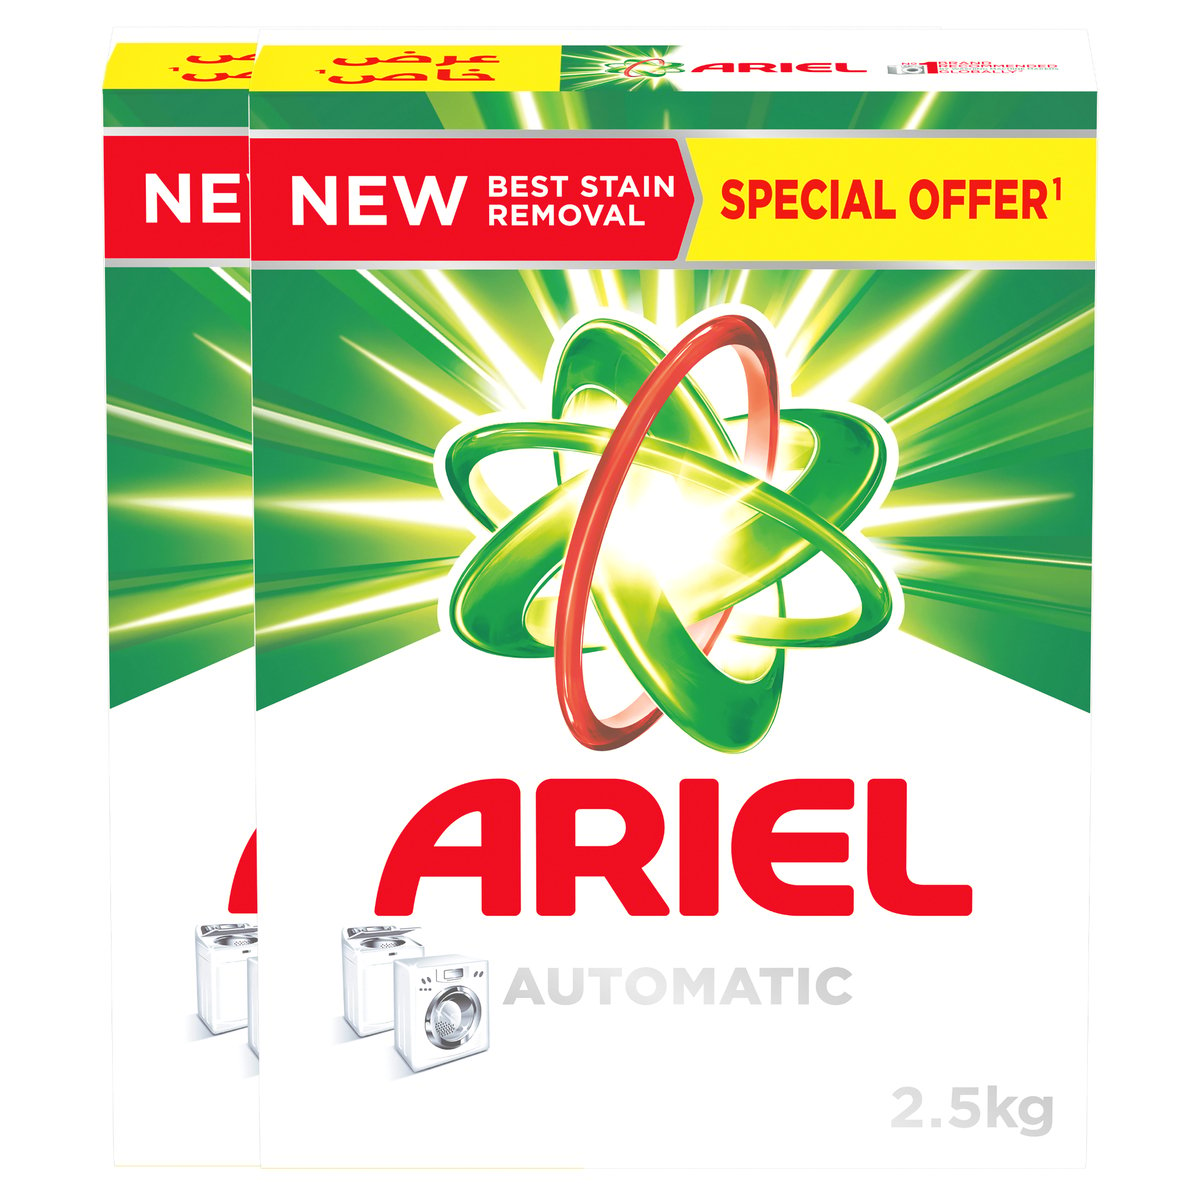 Ariel Automatic Powder Laundry Detergent Original Scent 2 x 2.5kg